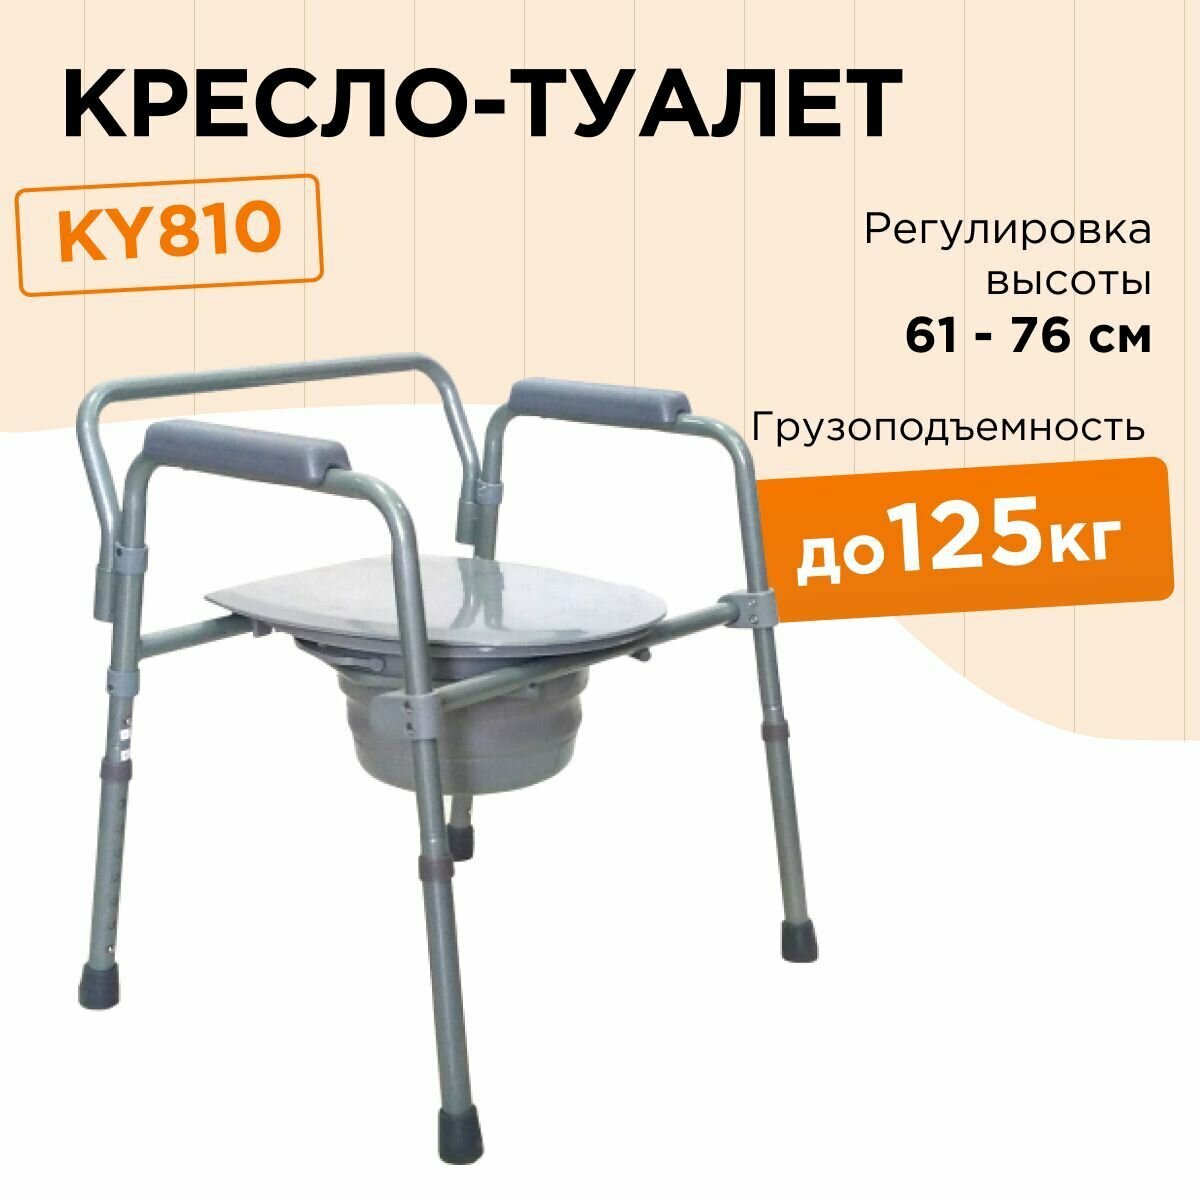 Кресло туалет КY810 с регулировкой высоты санитарный стул пассивного типа